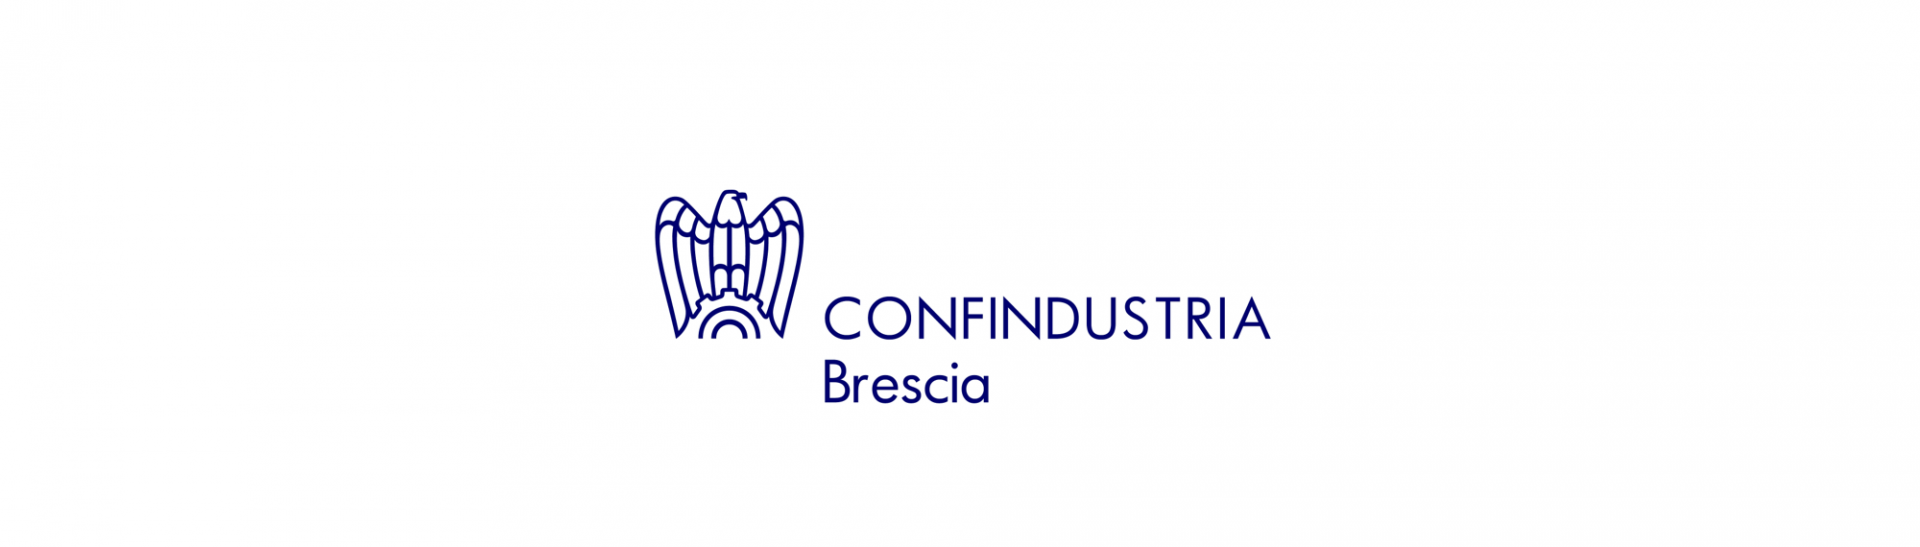 Confindustria Brescia - 